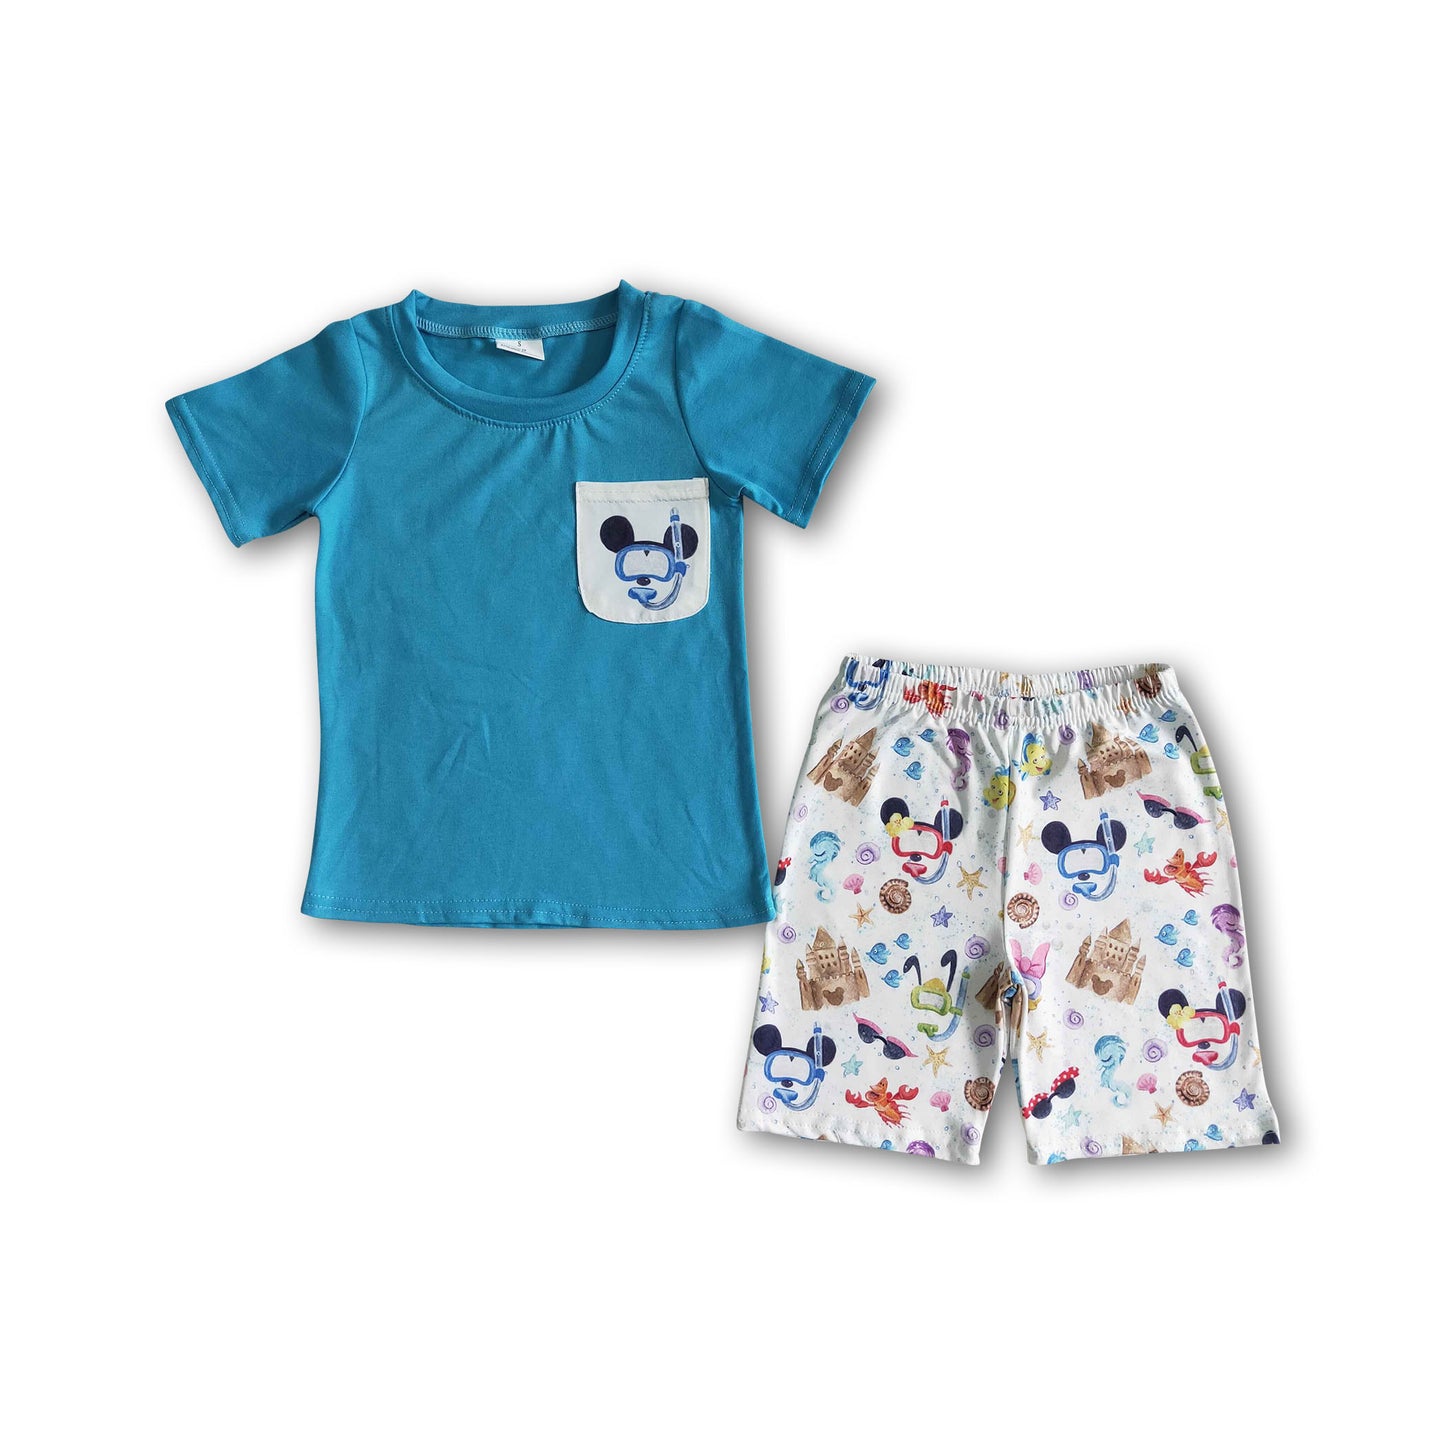 Blue shirt cute print children set cute boy clothes